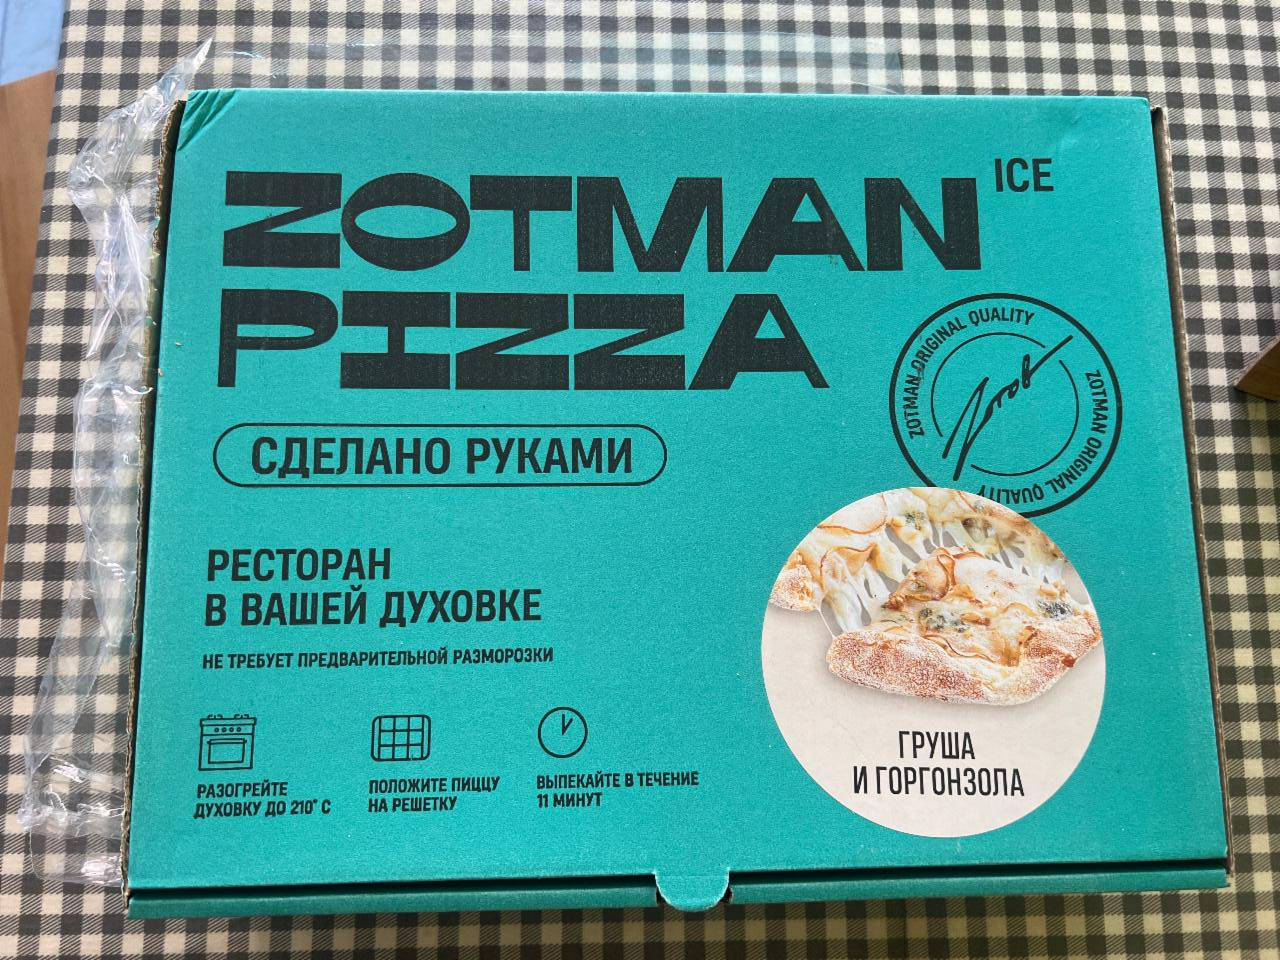 Фото - Пицца груша и горгонзола Zotman